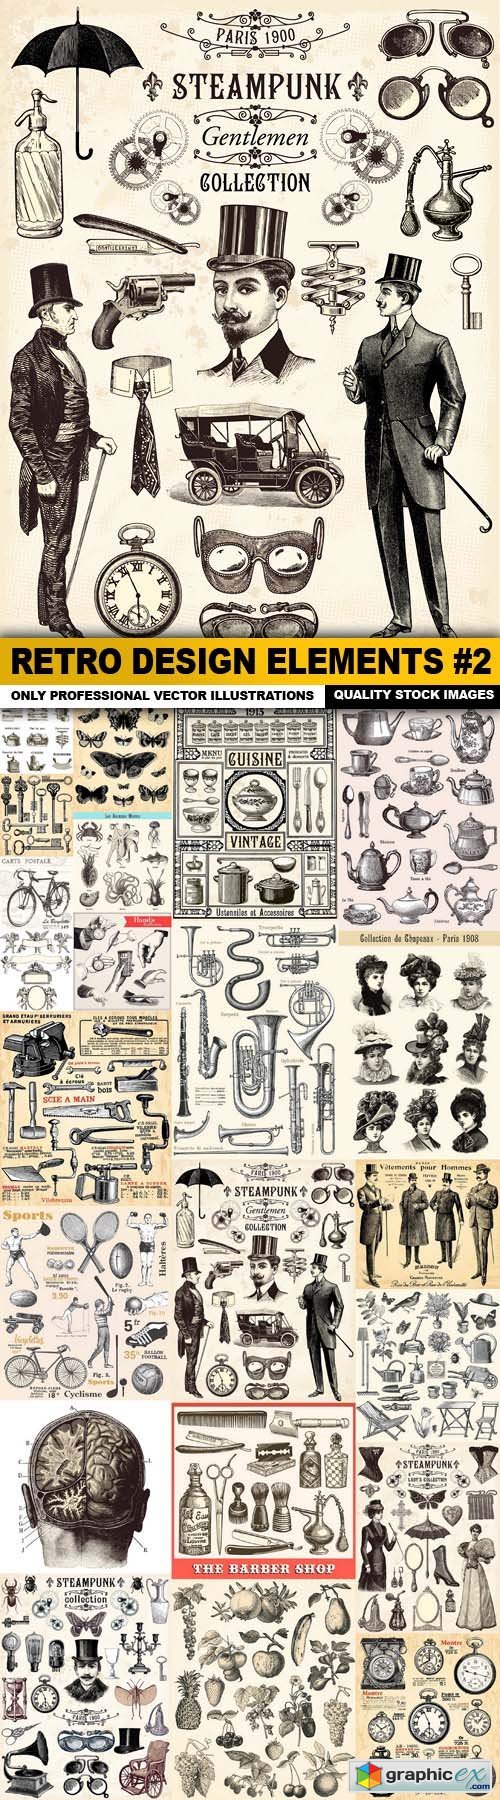 Retro Design Elements #2